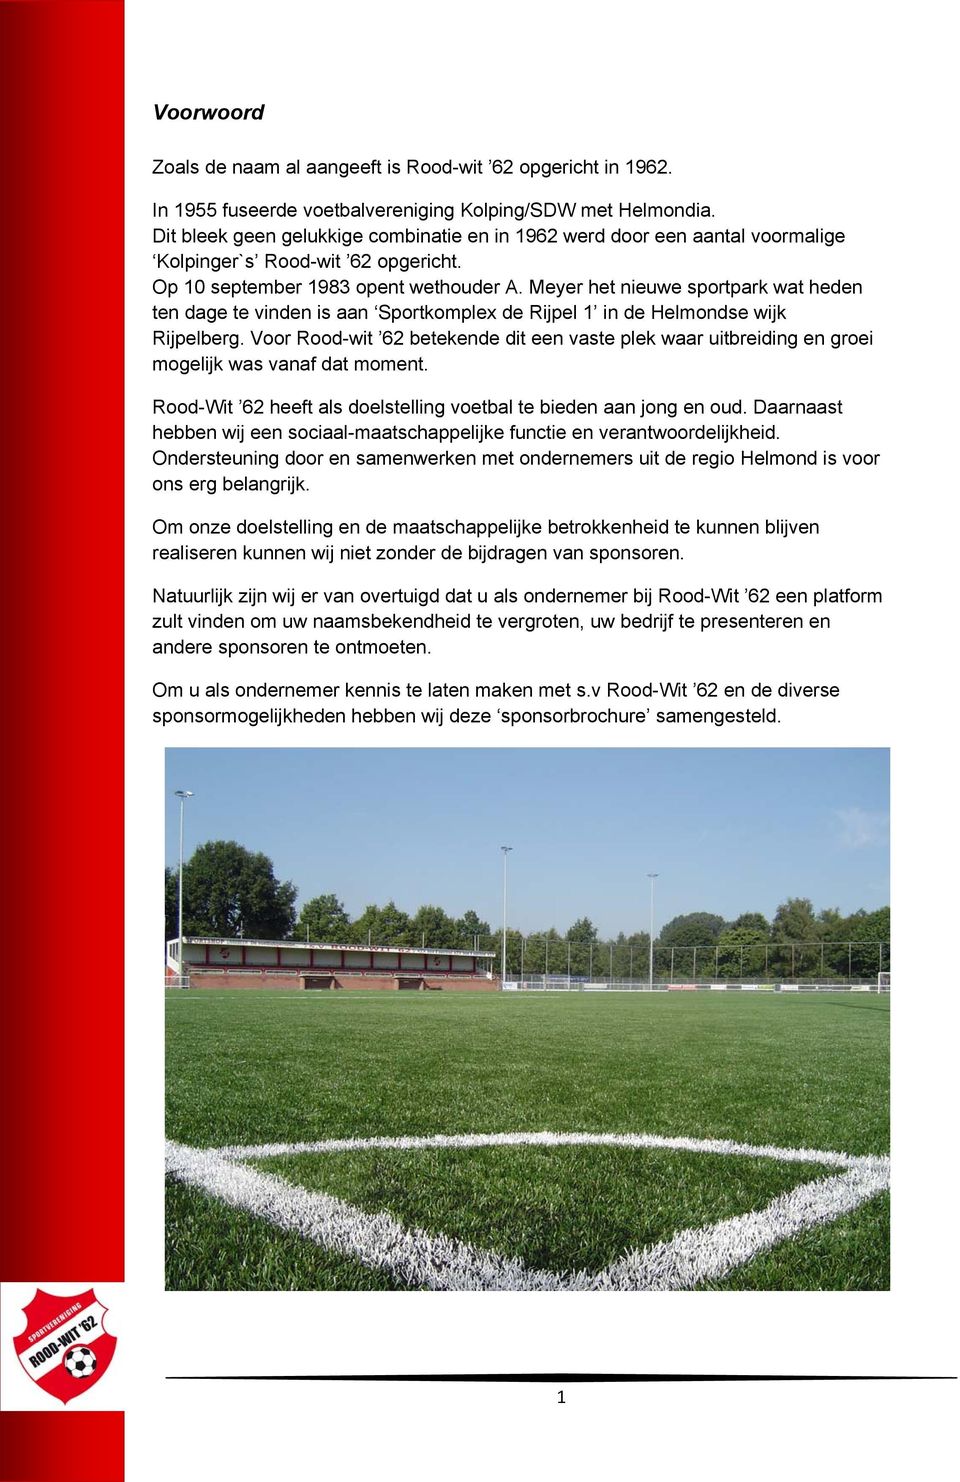 Meyer het nieuwe sportpark wat heden ten dage te vinden is aan Sportkomplex de Rijpel 1 in de Helmondse wijk Rijpelberg.